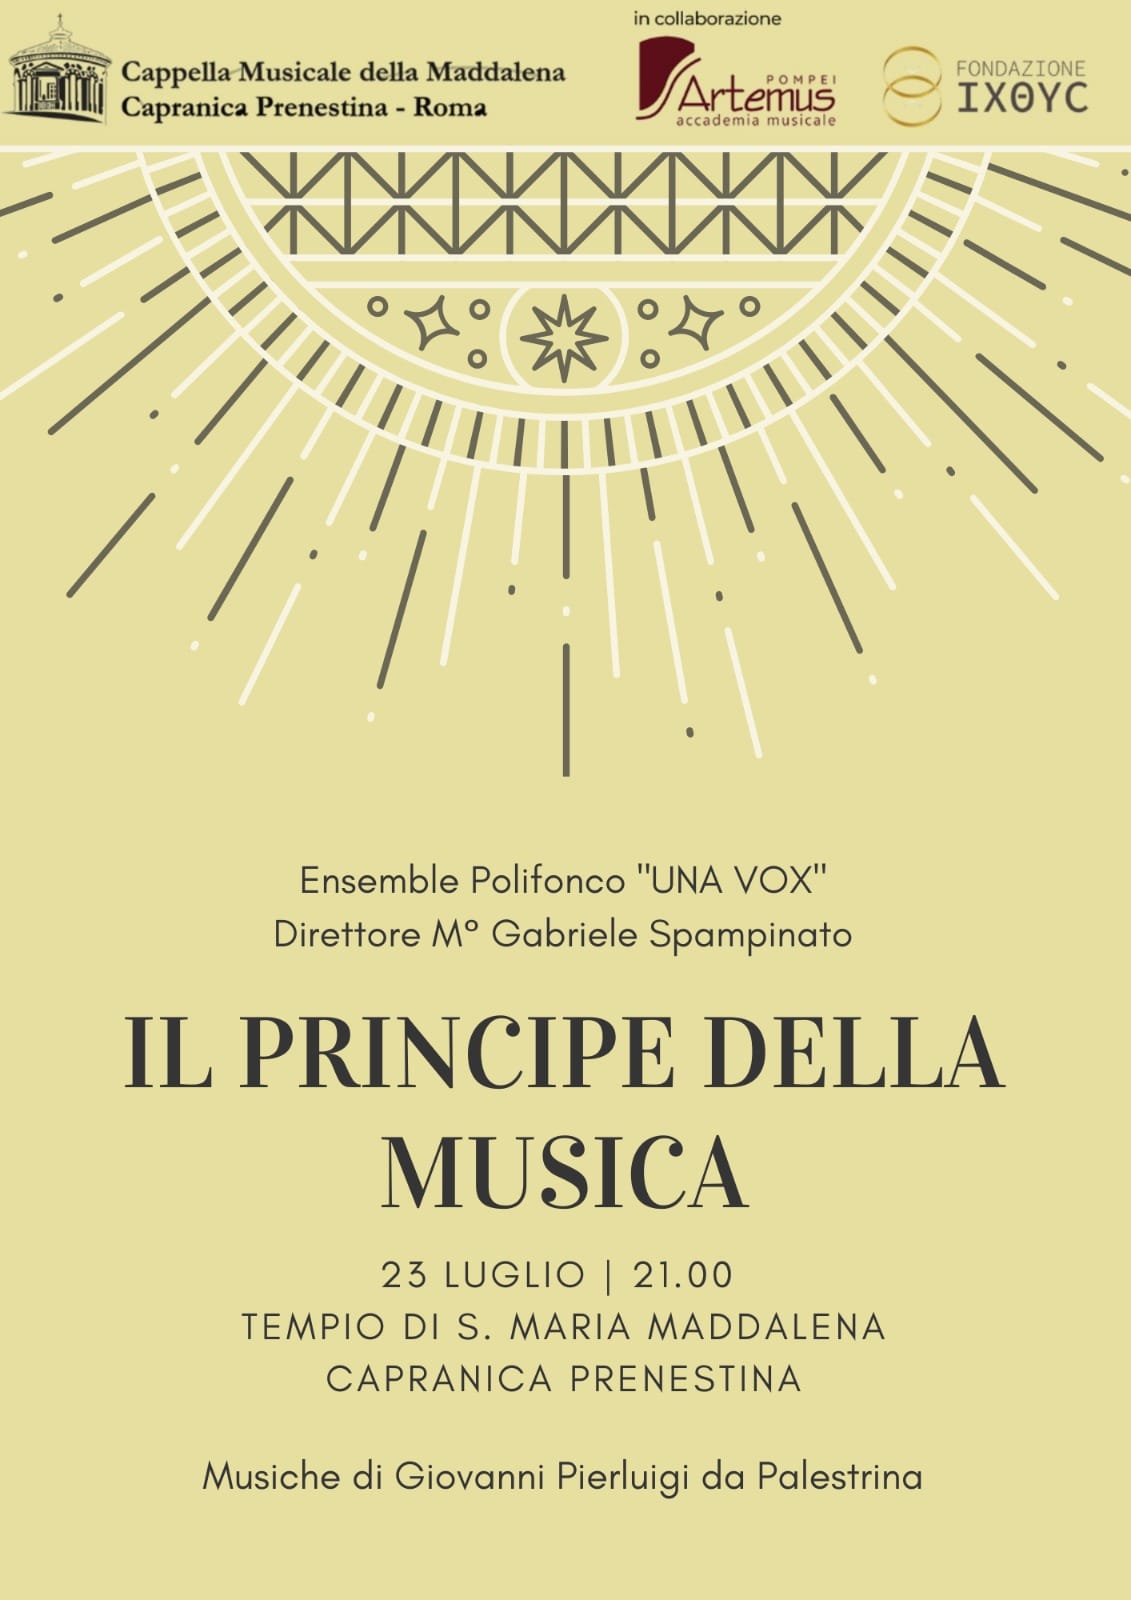 https://www.agenziaeventi.org/immagini_news/3050/la-cappella-musicale-della-maddalena-torna-a-roma-sold-out-per-la-nuova-orchestra-scarlatti-alla-basilica-di-s-maria-in-aracoeli-3050.jpg